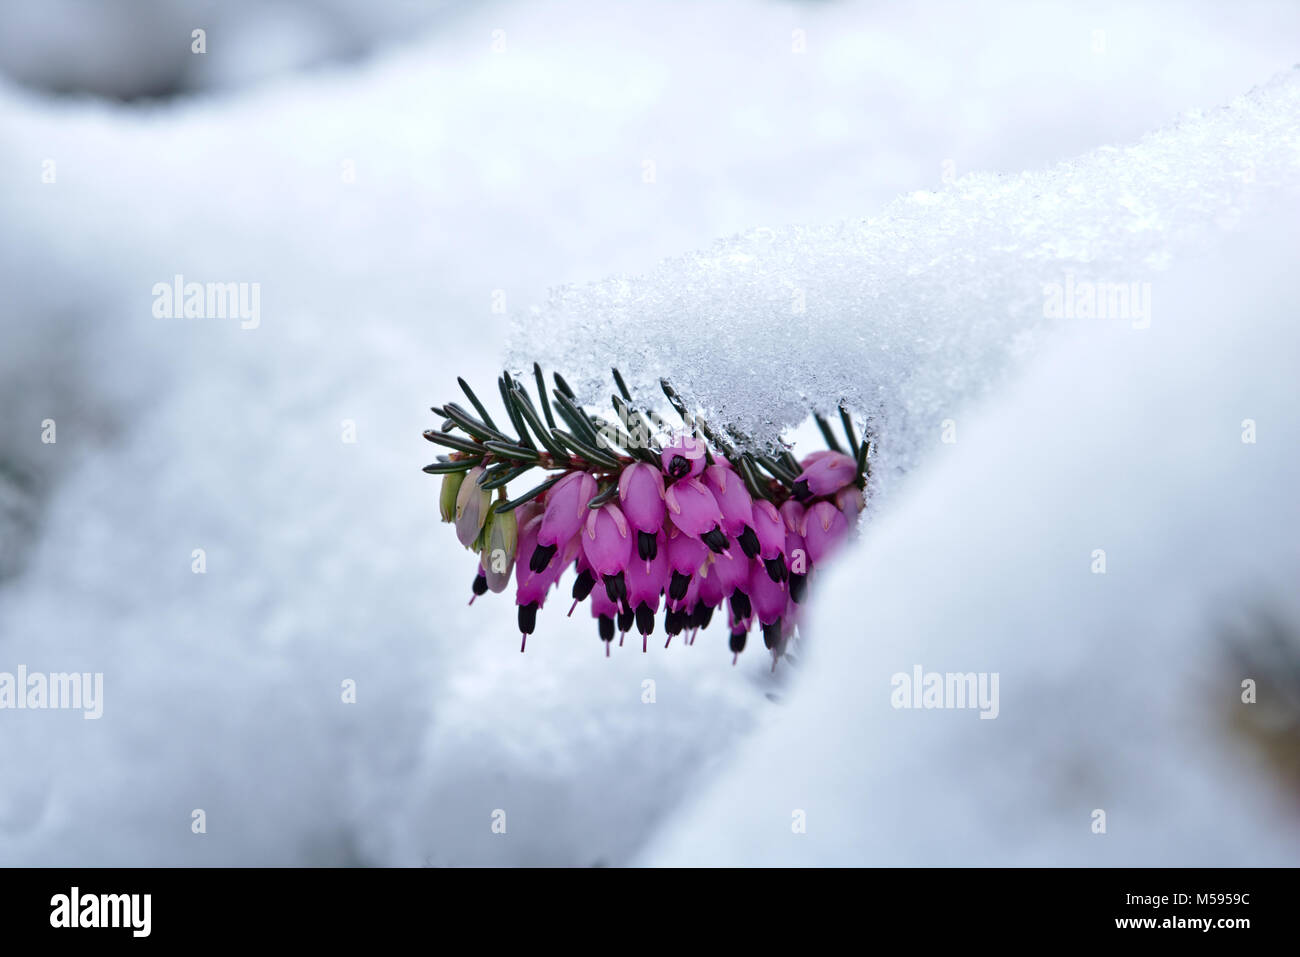 Coperto di neve e la brughiera di primavera in fiore Foto Stock